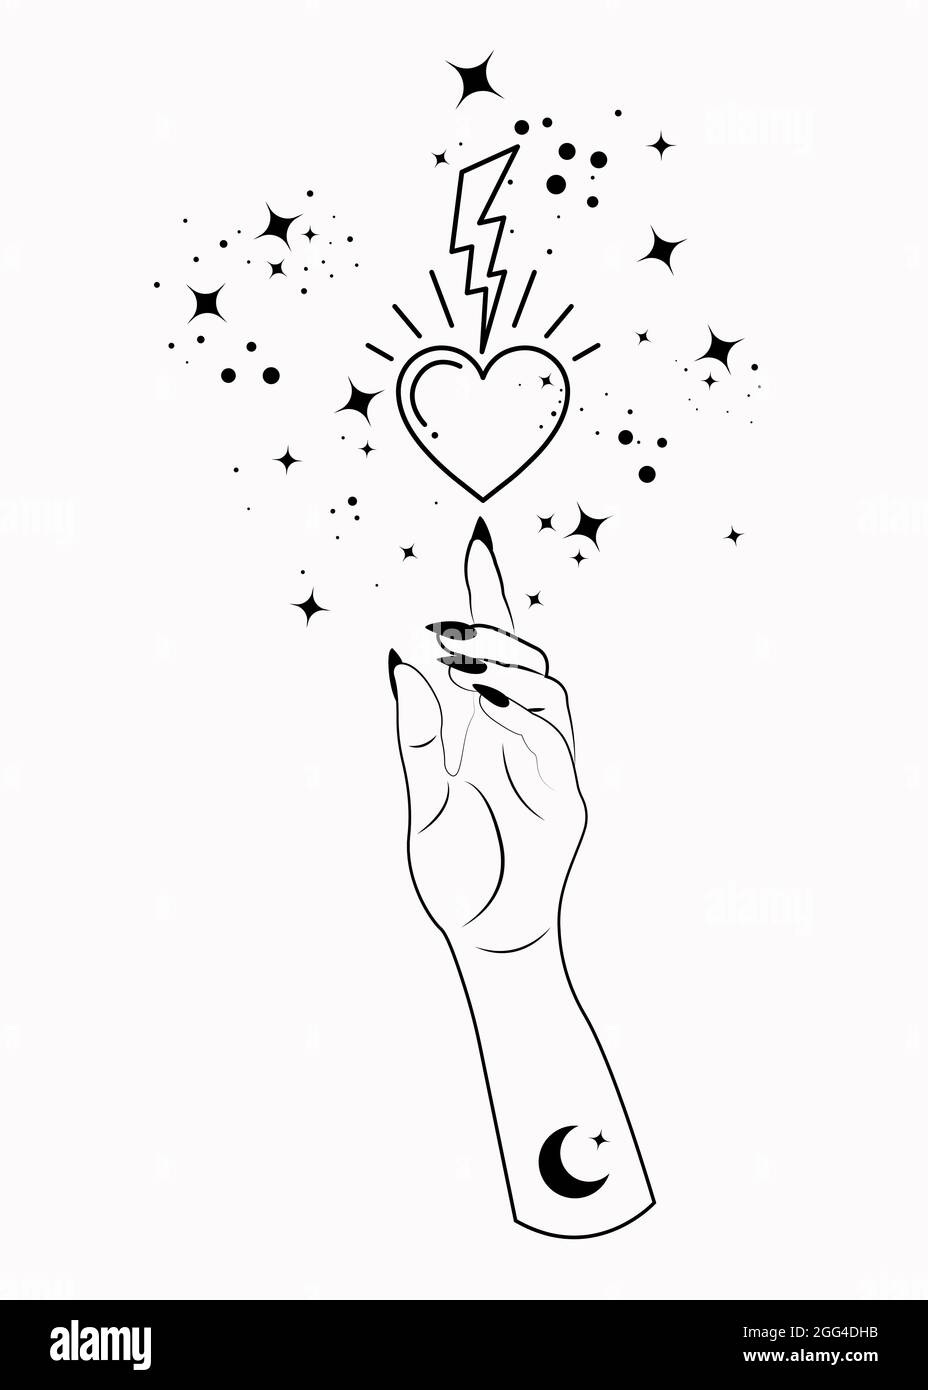 Mistica Donna alchimia mano esoterica magia spazio stelle, fulmine e sacro cuore simbolo. Logo di stile boho in nero contorno tatuaggio icona segno spirituale Illustrazione Vettoriale